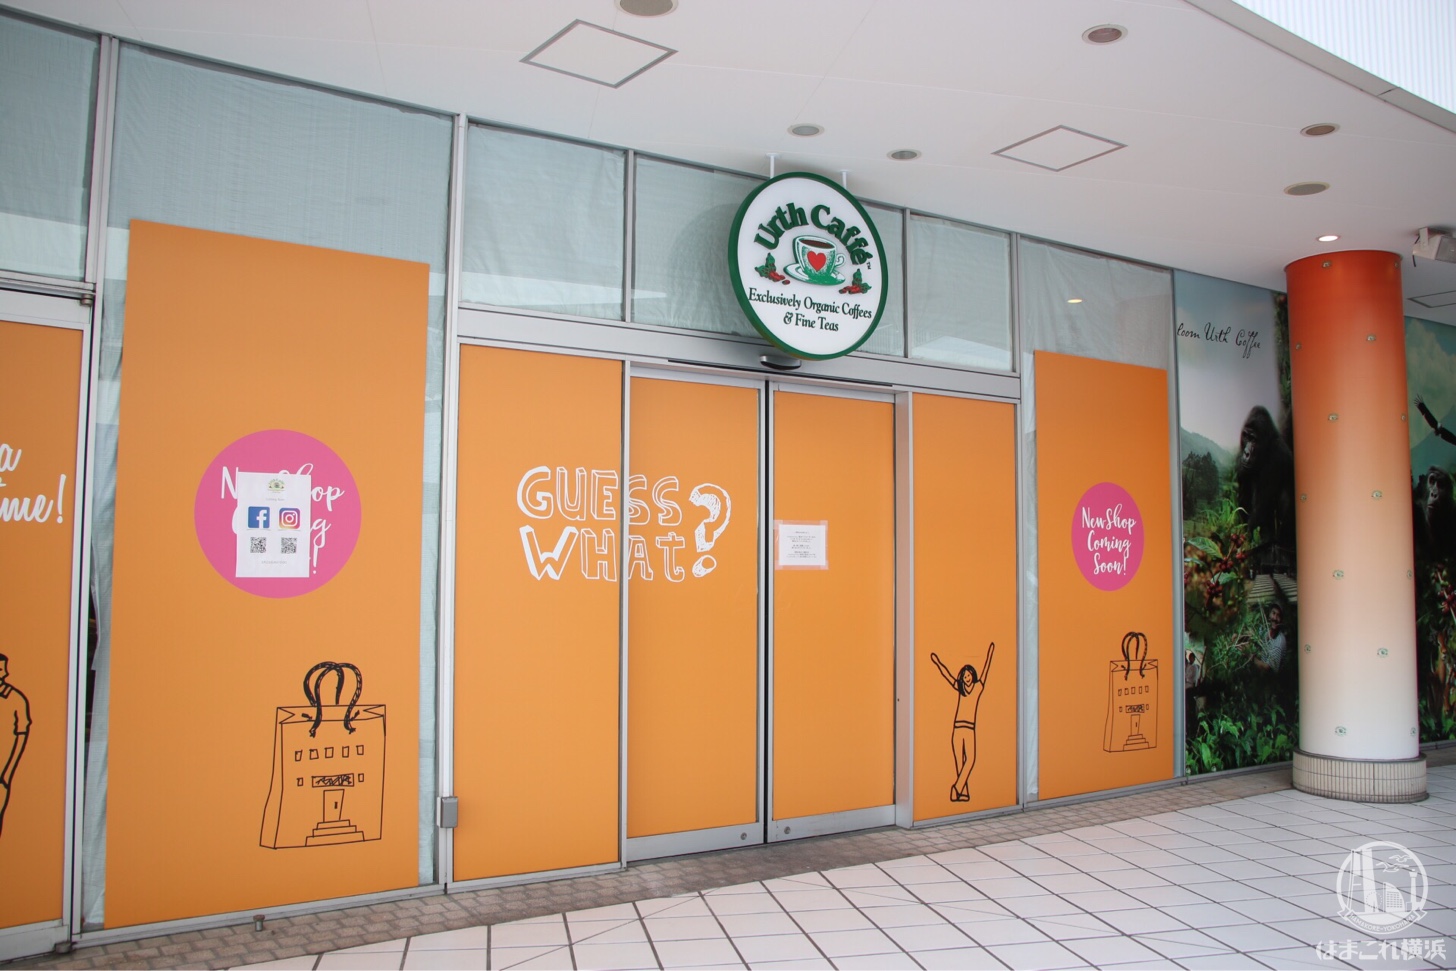 横浜ベイクォーター「アースカフェ」のオープン場所は無印カフェ跡地と判明！